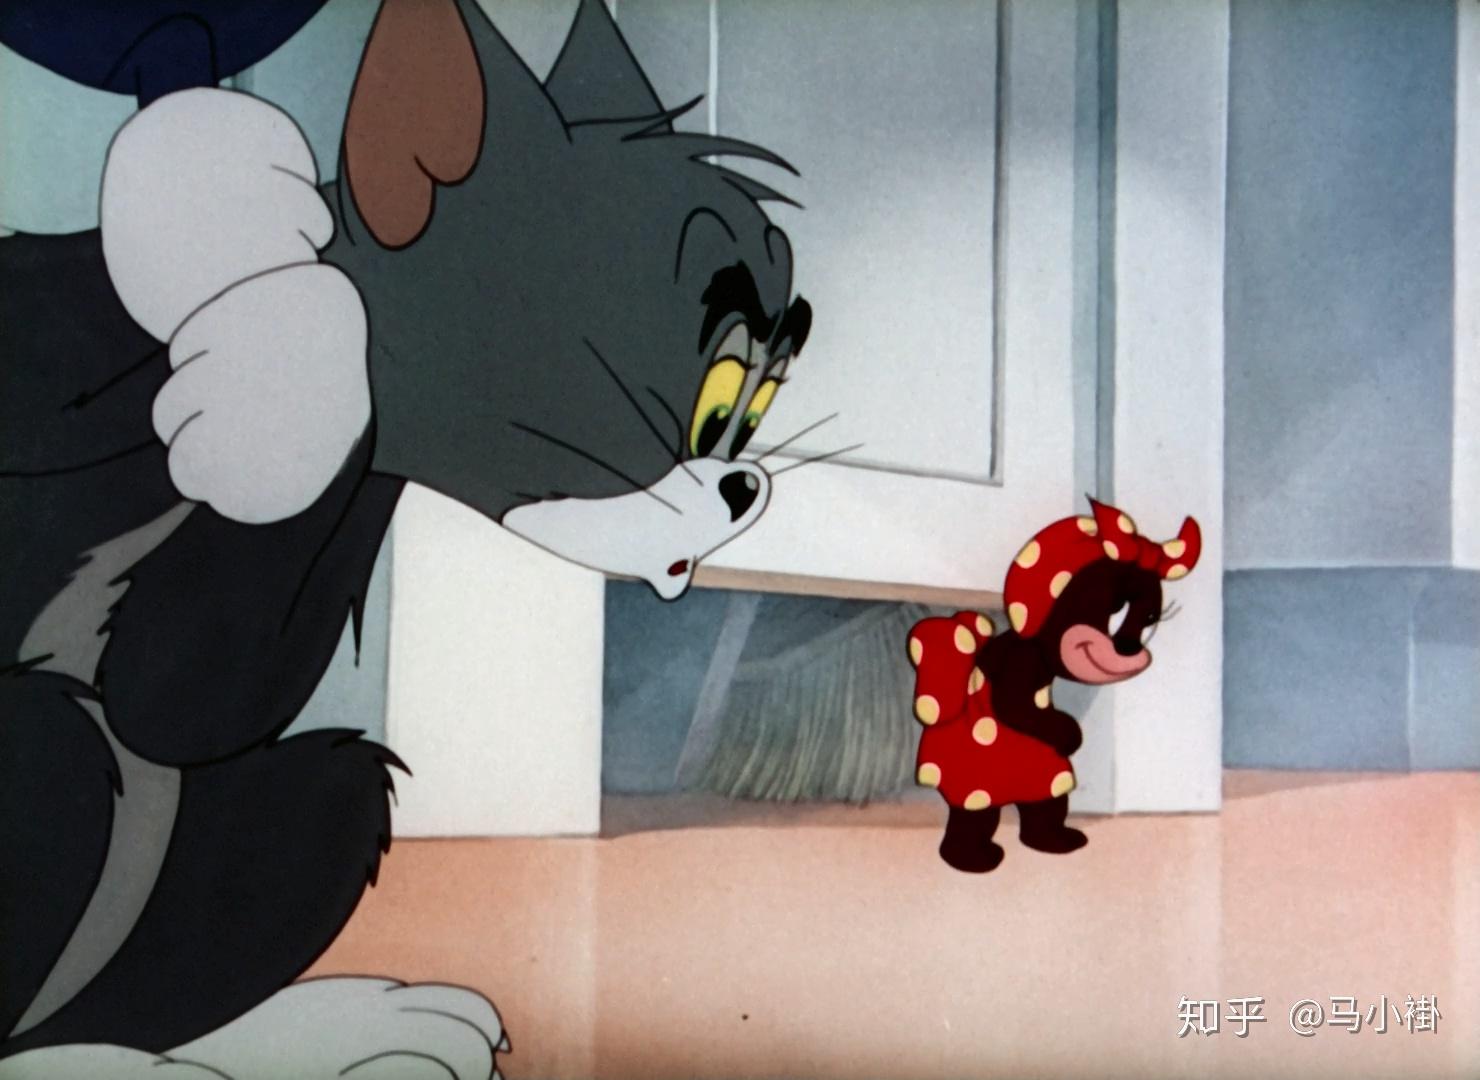 1992-2022 猫和老鼠大电影合集 18部 英语/国语 中文字幕 1080P 高清 MP4 下载地址 猫和老鼠电影版全集 – 旧时光